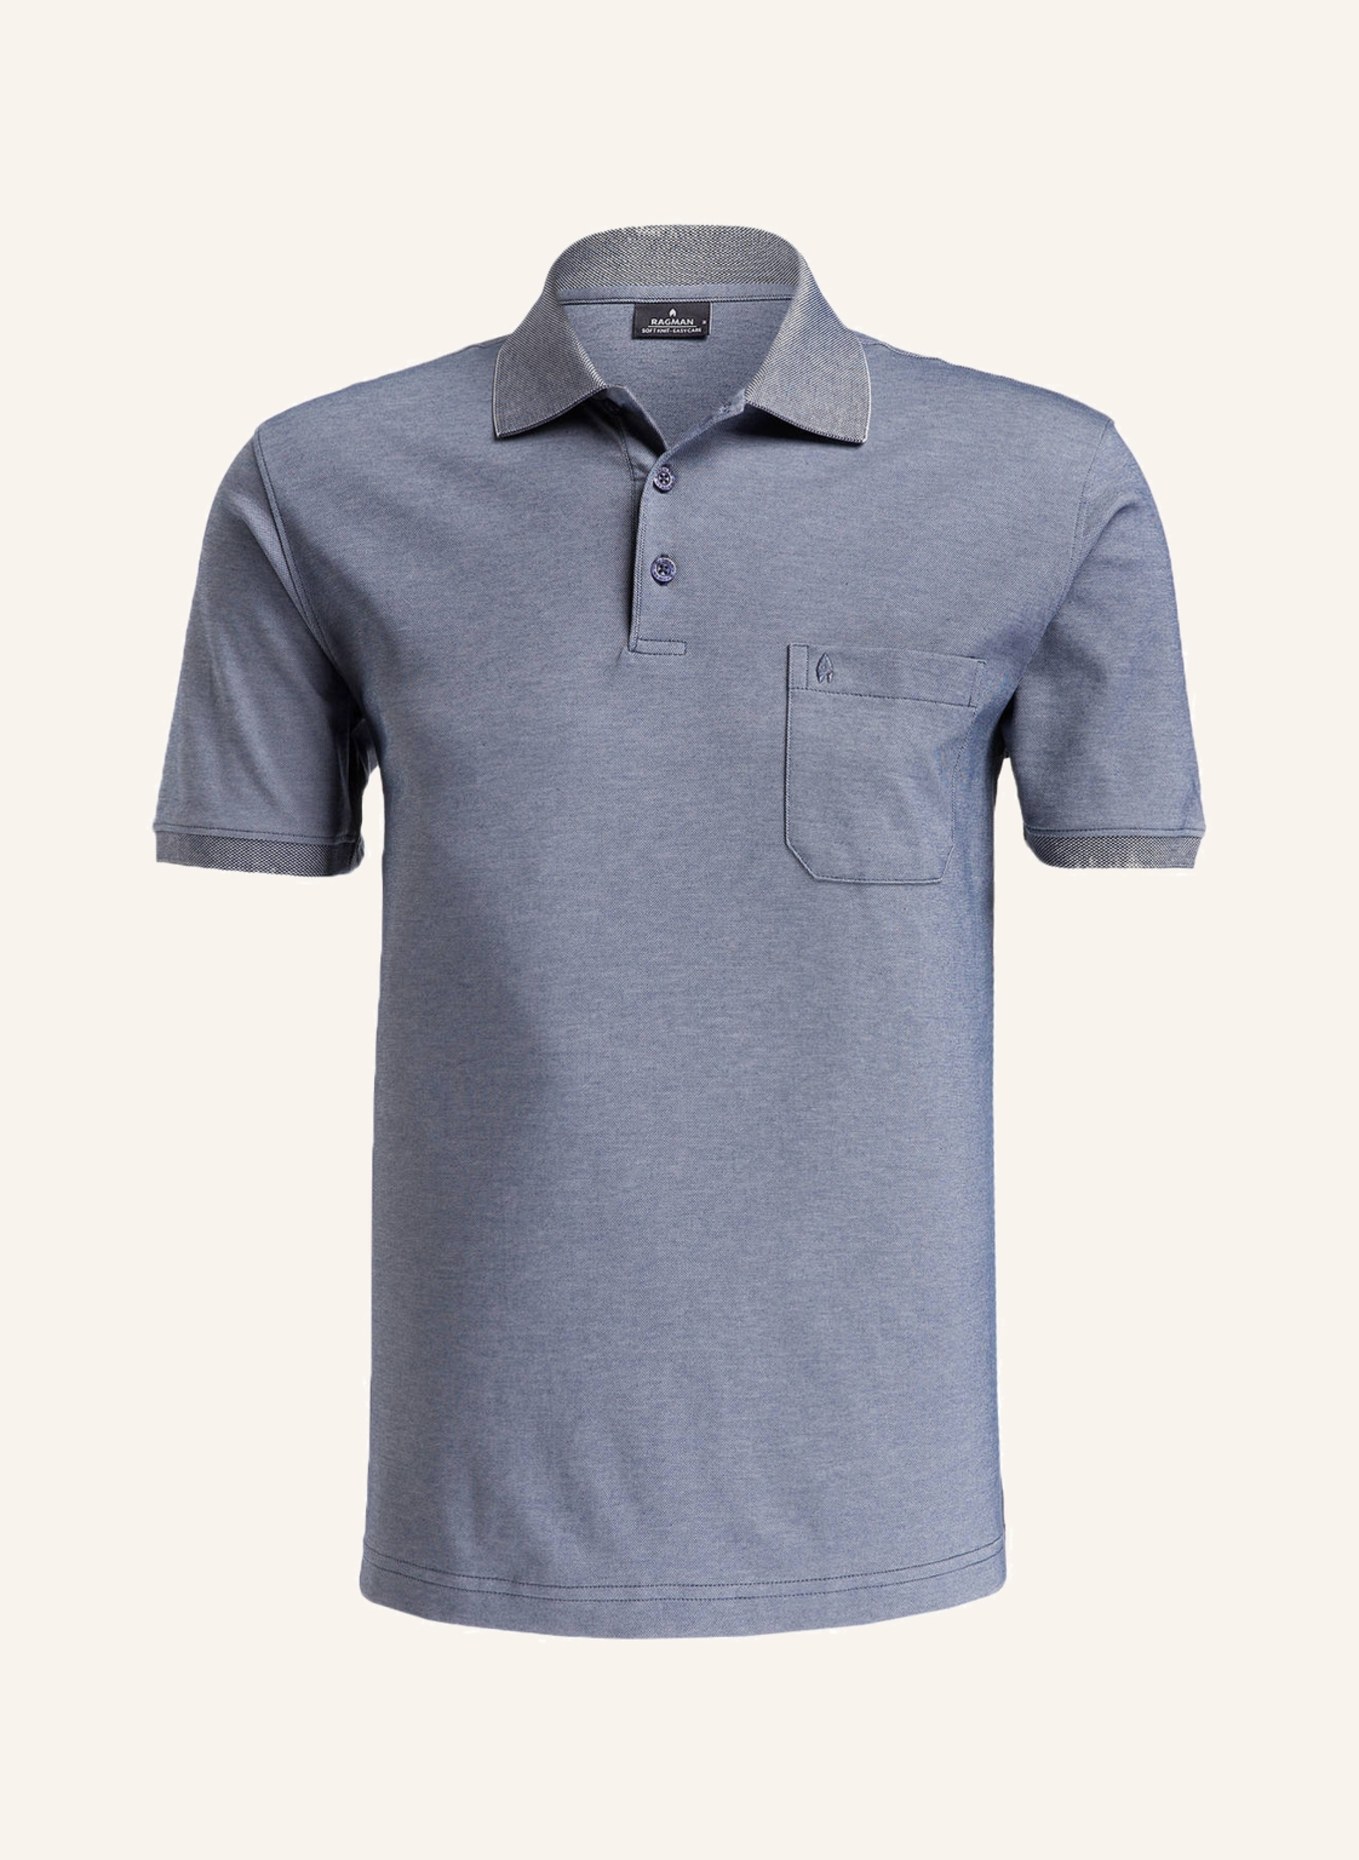 RAGMAN Piqué-Poloshirt , Farbe: GRAUBLAU (Bild 1)